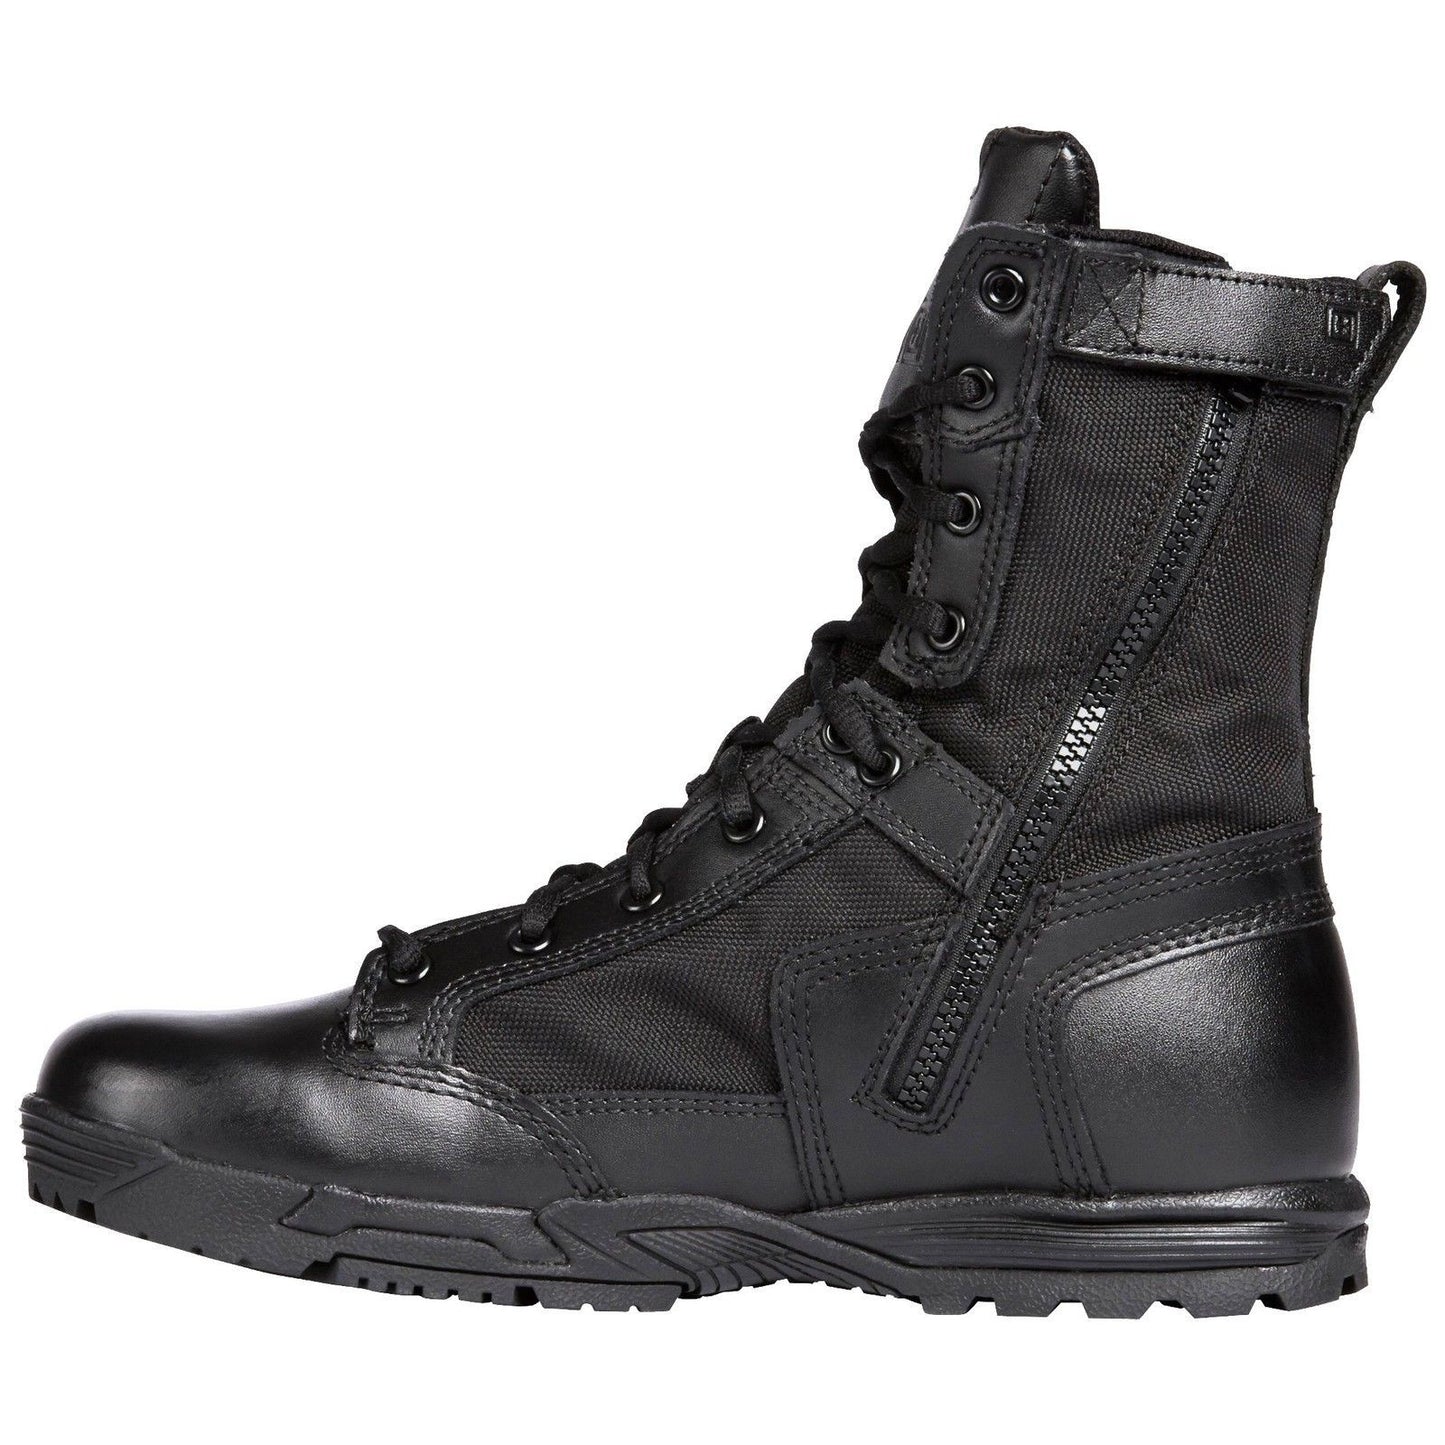 5.11 Tactical Black Skyweight Waterproof Side Zip Field Duty Work Boots